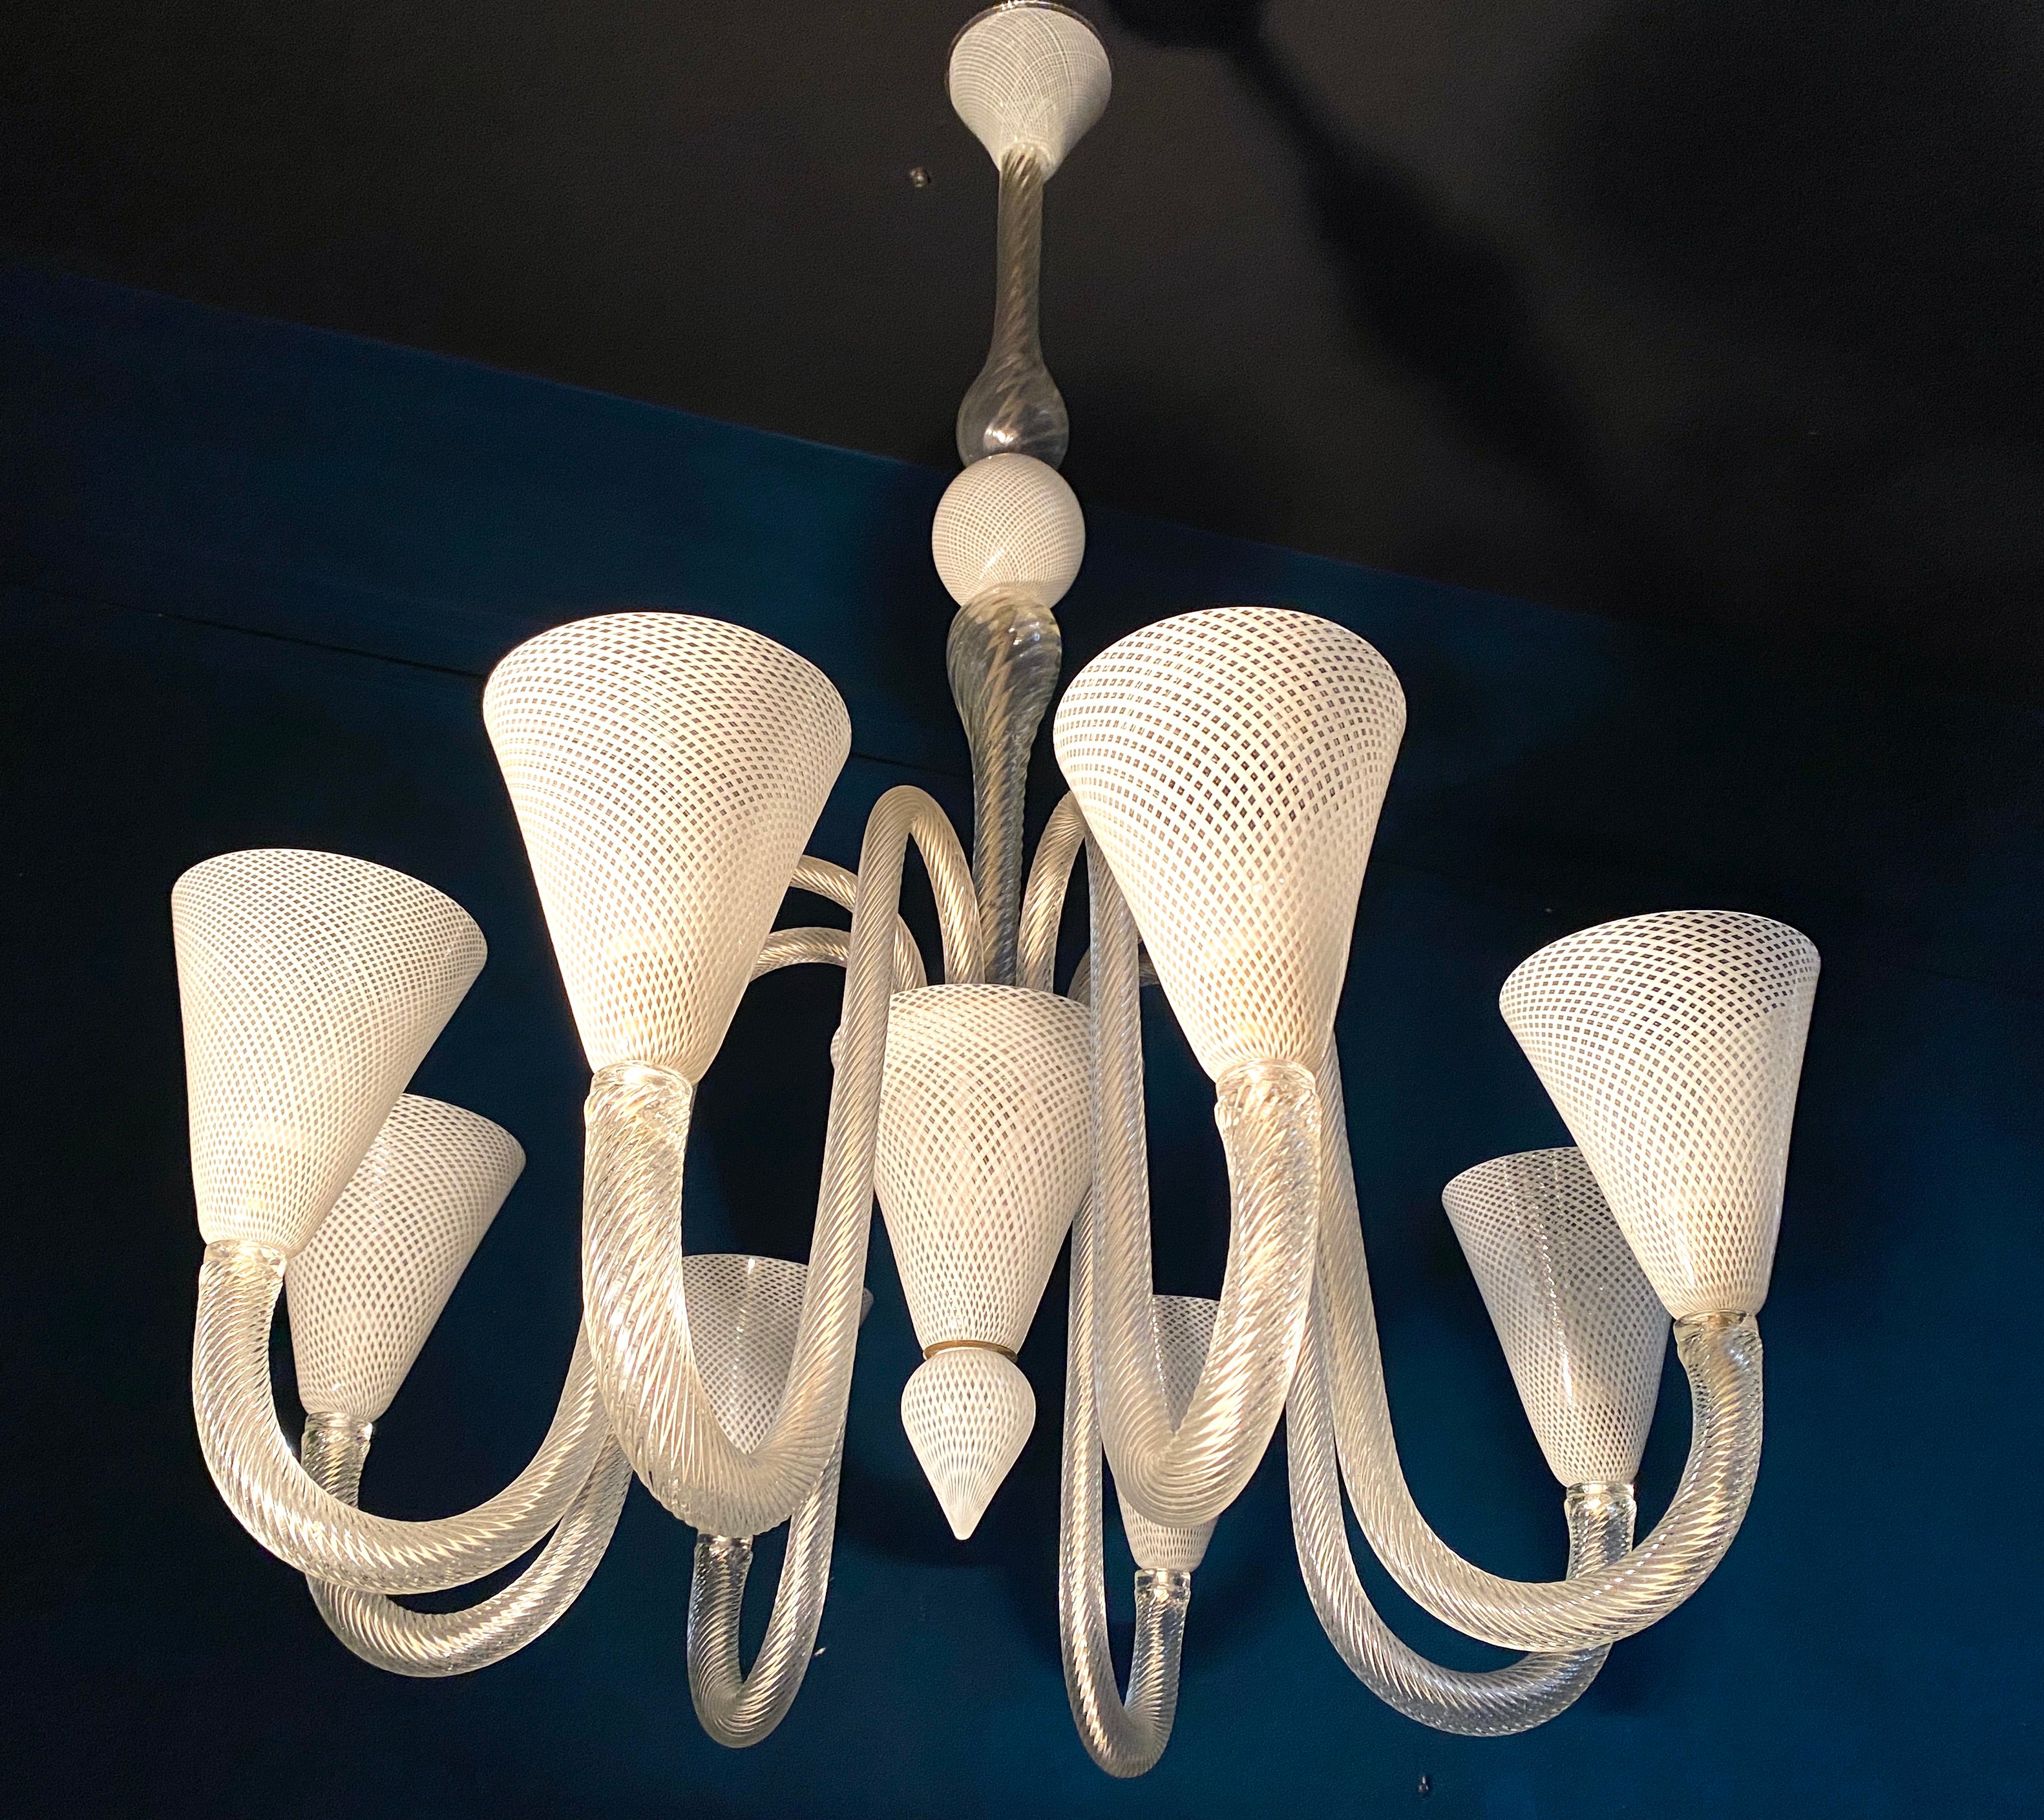 Elegant  Venini Art Deco mundgeblasener Reticello Murano Kronleuchter mit sechs Armen. 
 
Sechs  E 27 Glühbirnen. Wir können die Verkabelung an die Normen Ihres Landes anpassen.
Gereinigt und neu verkabelt, voll funktionstüchtig und einsatzbereit.